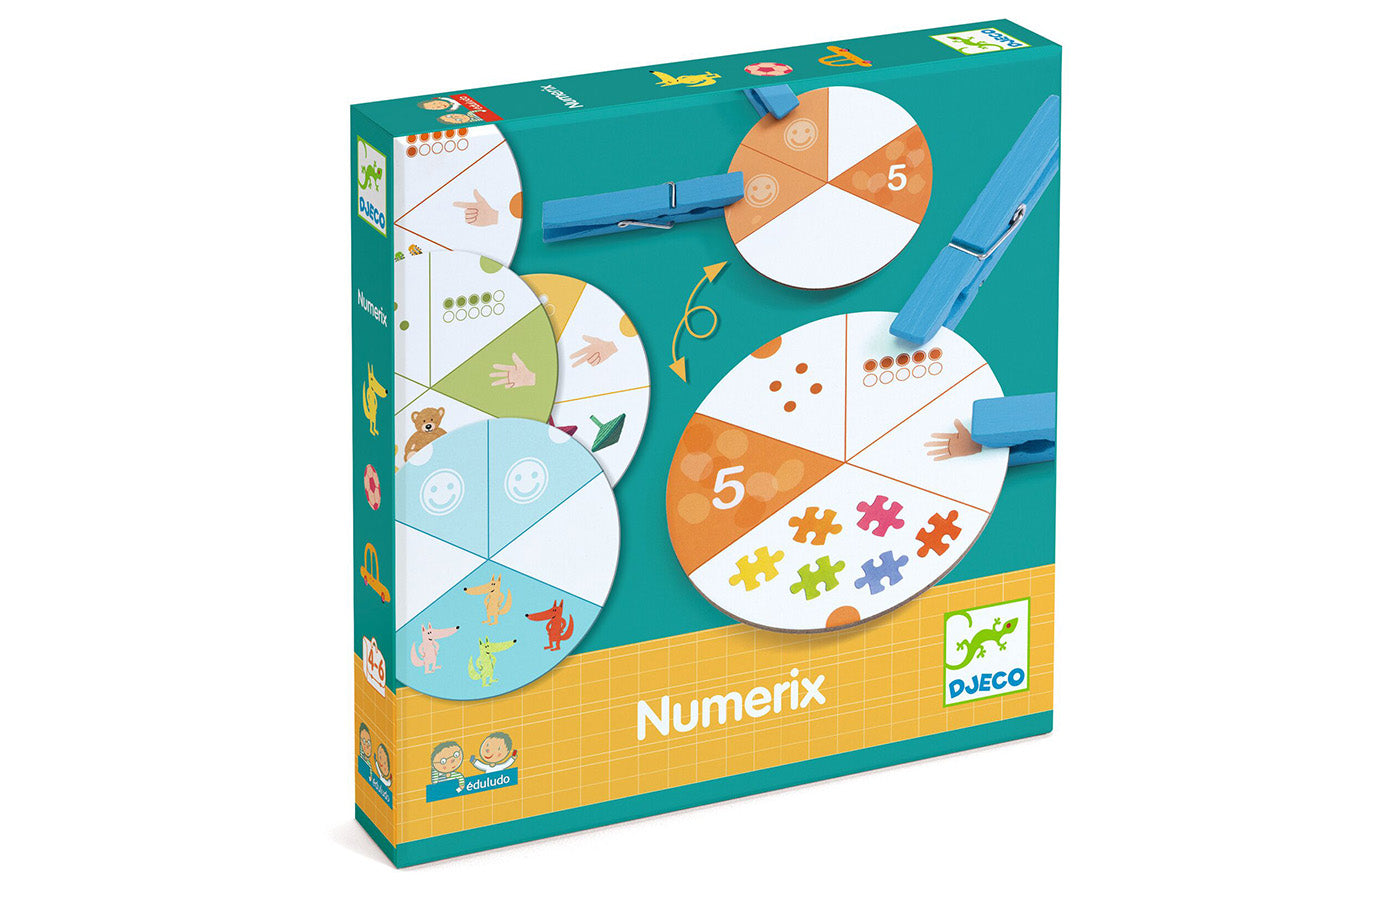 Numerix